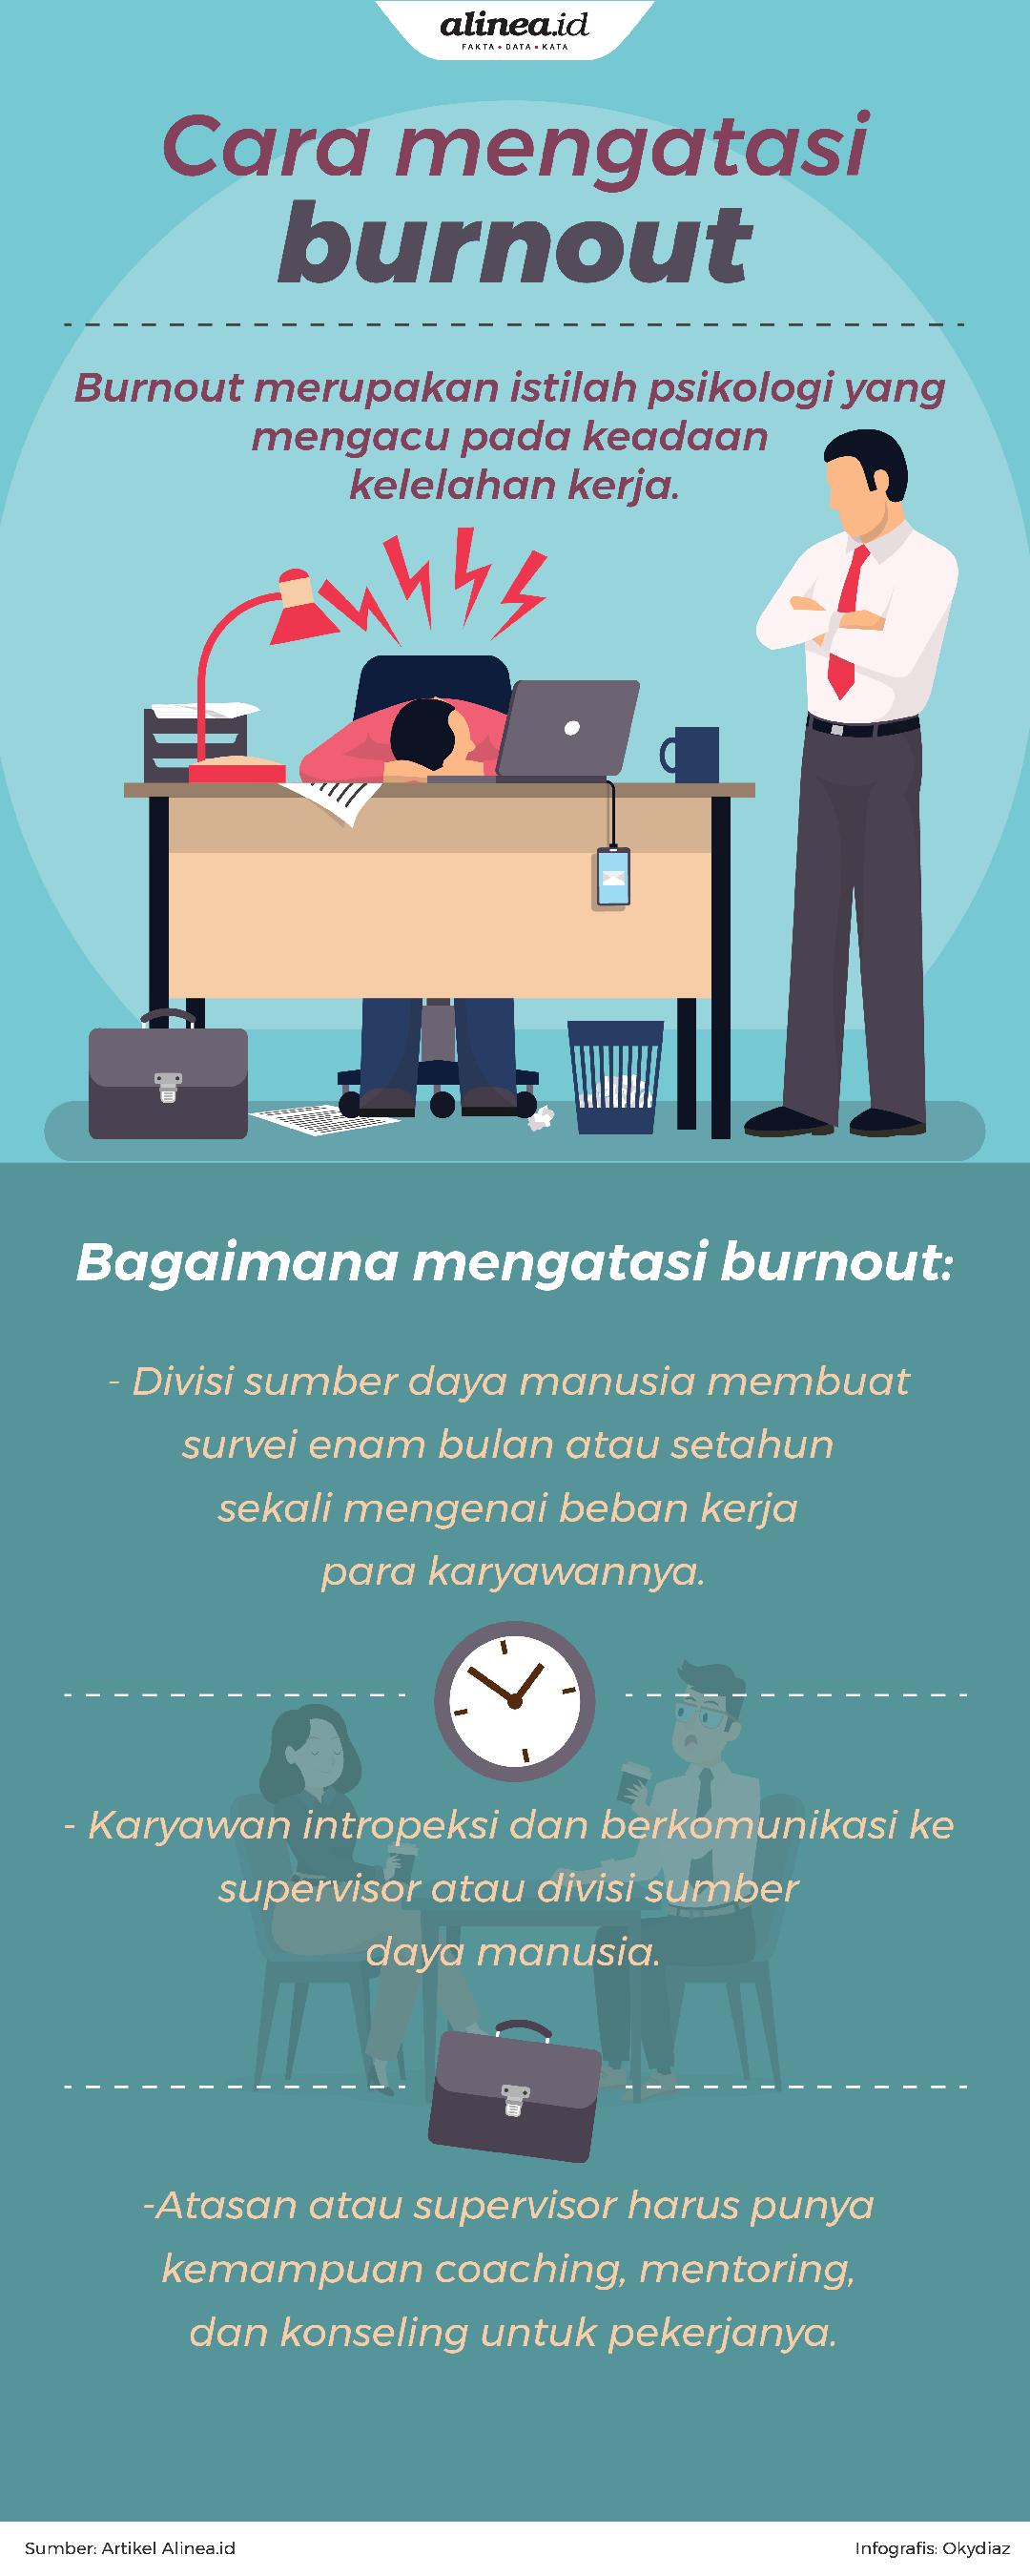 Burnout bisa memicu karyawan untuk keluarga dari pekerjaannya.